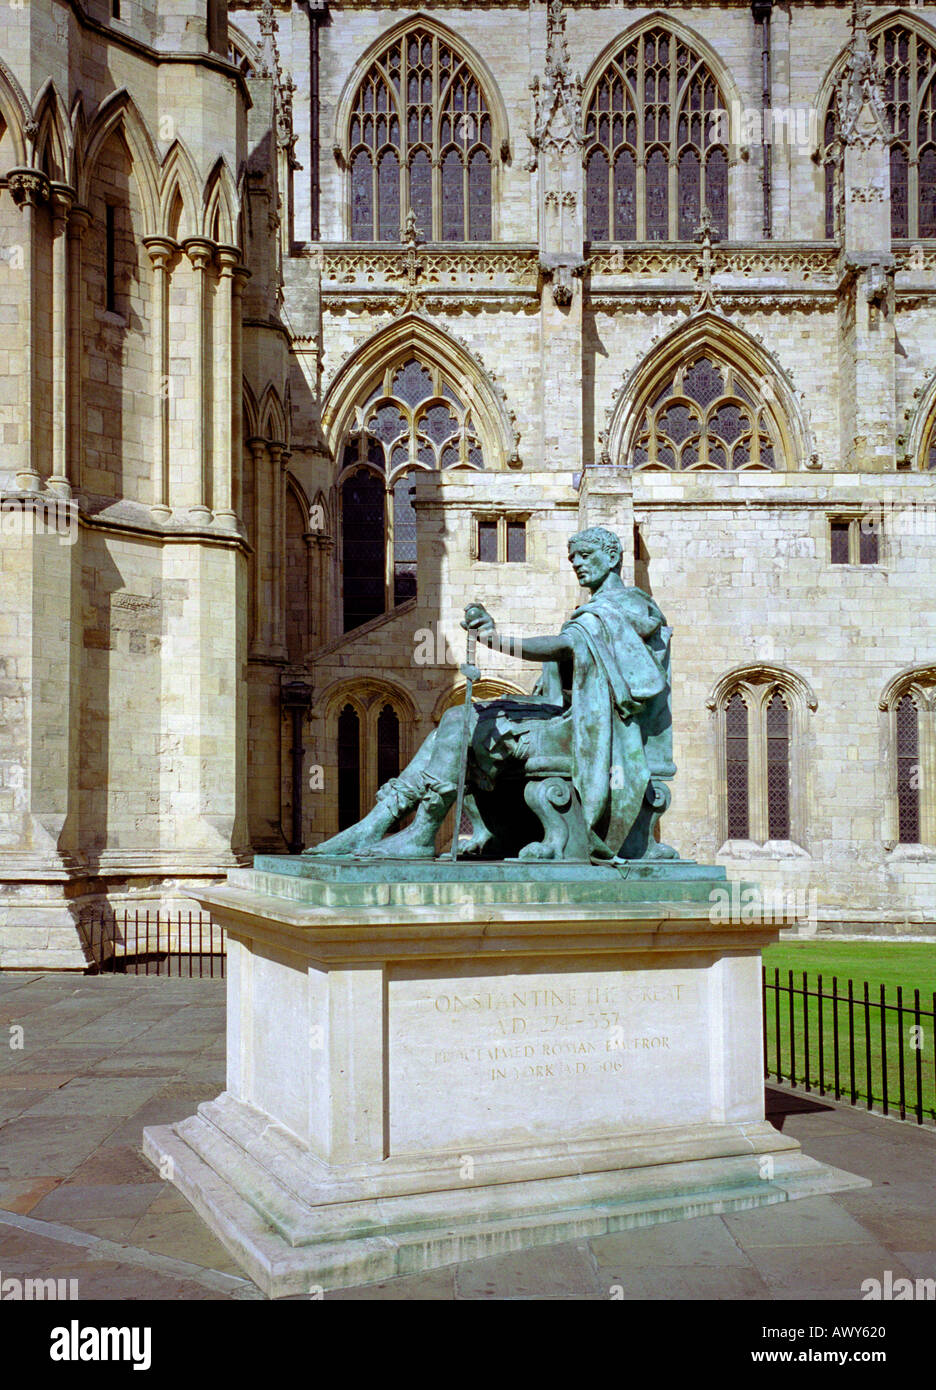 Statue de Constantin le Grand empereur romain annonce 274 337 à l'extérieur de la cathédrale de York dans la ville de York England UK Banque D'Images